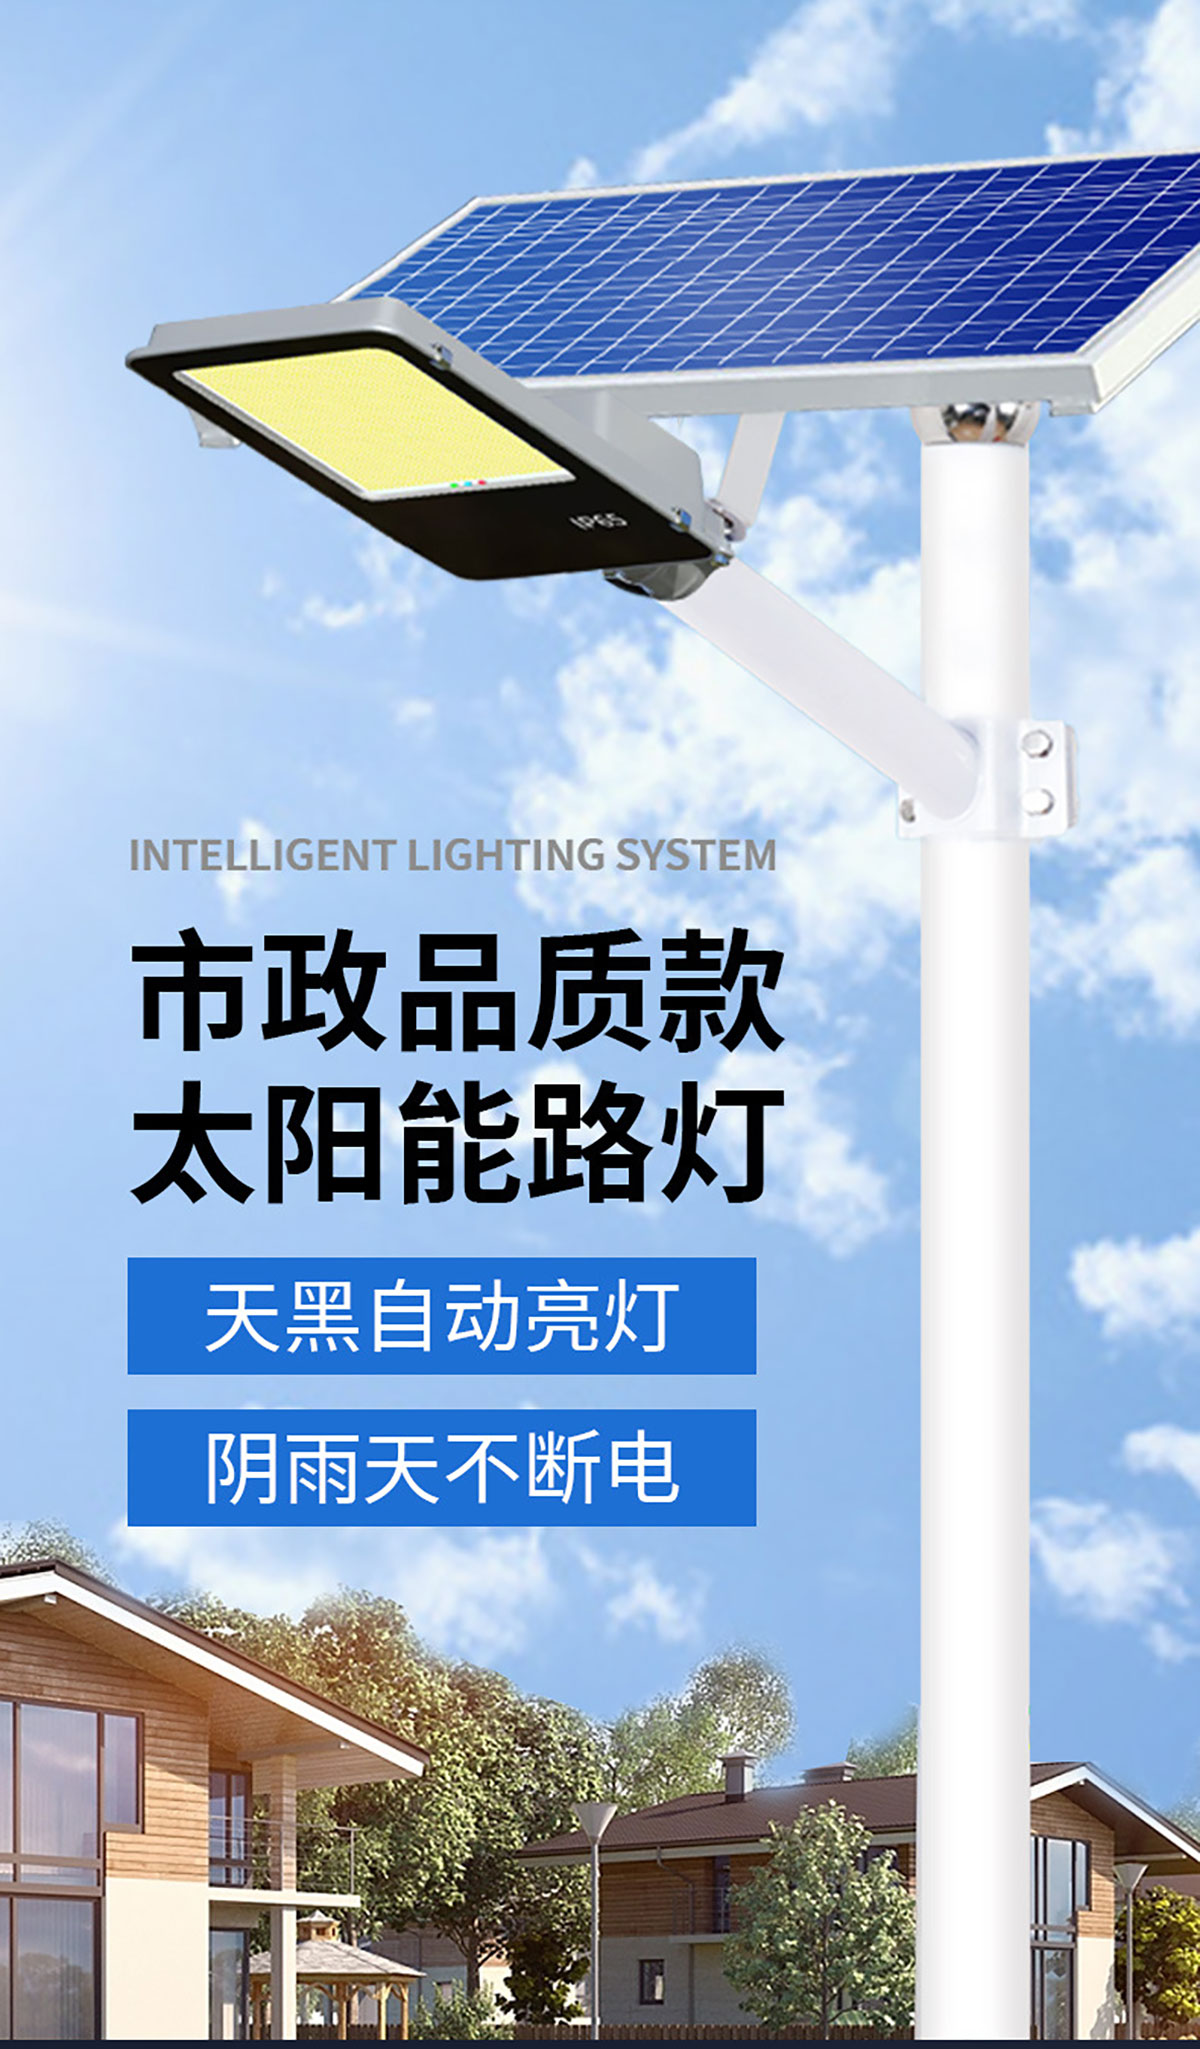 中山市省省照明科技有限公司